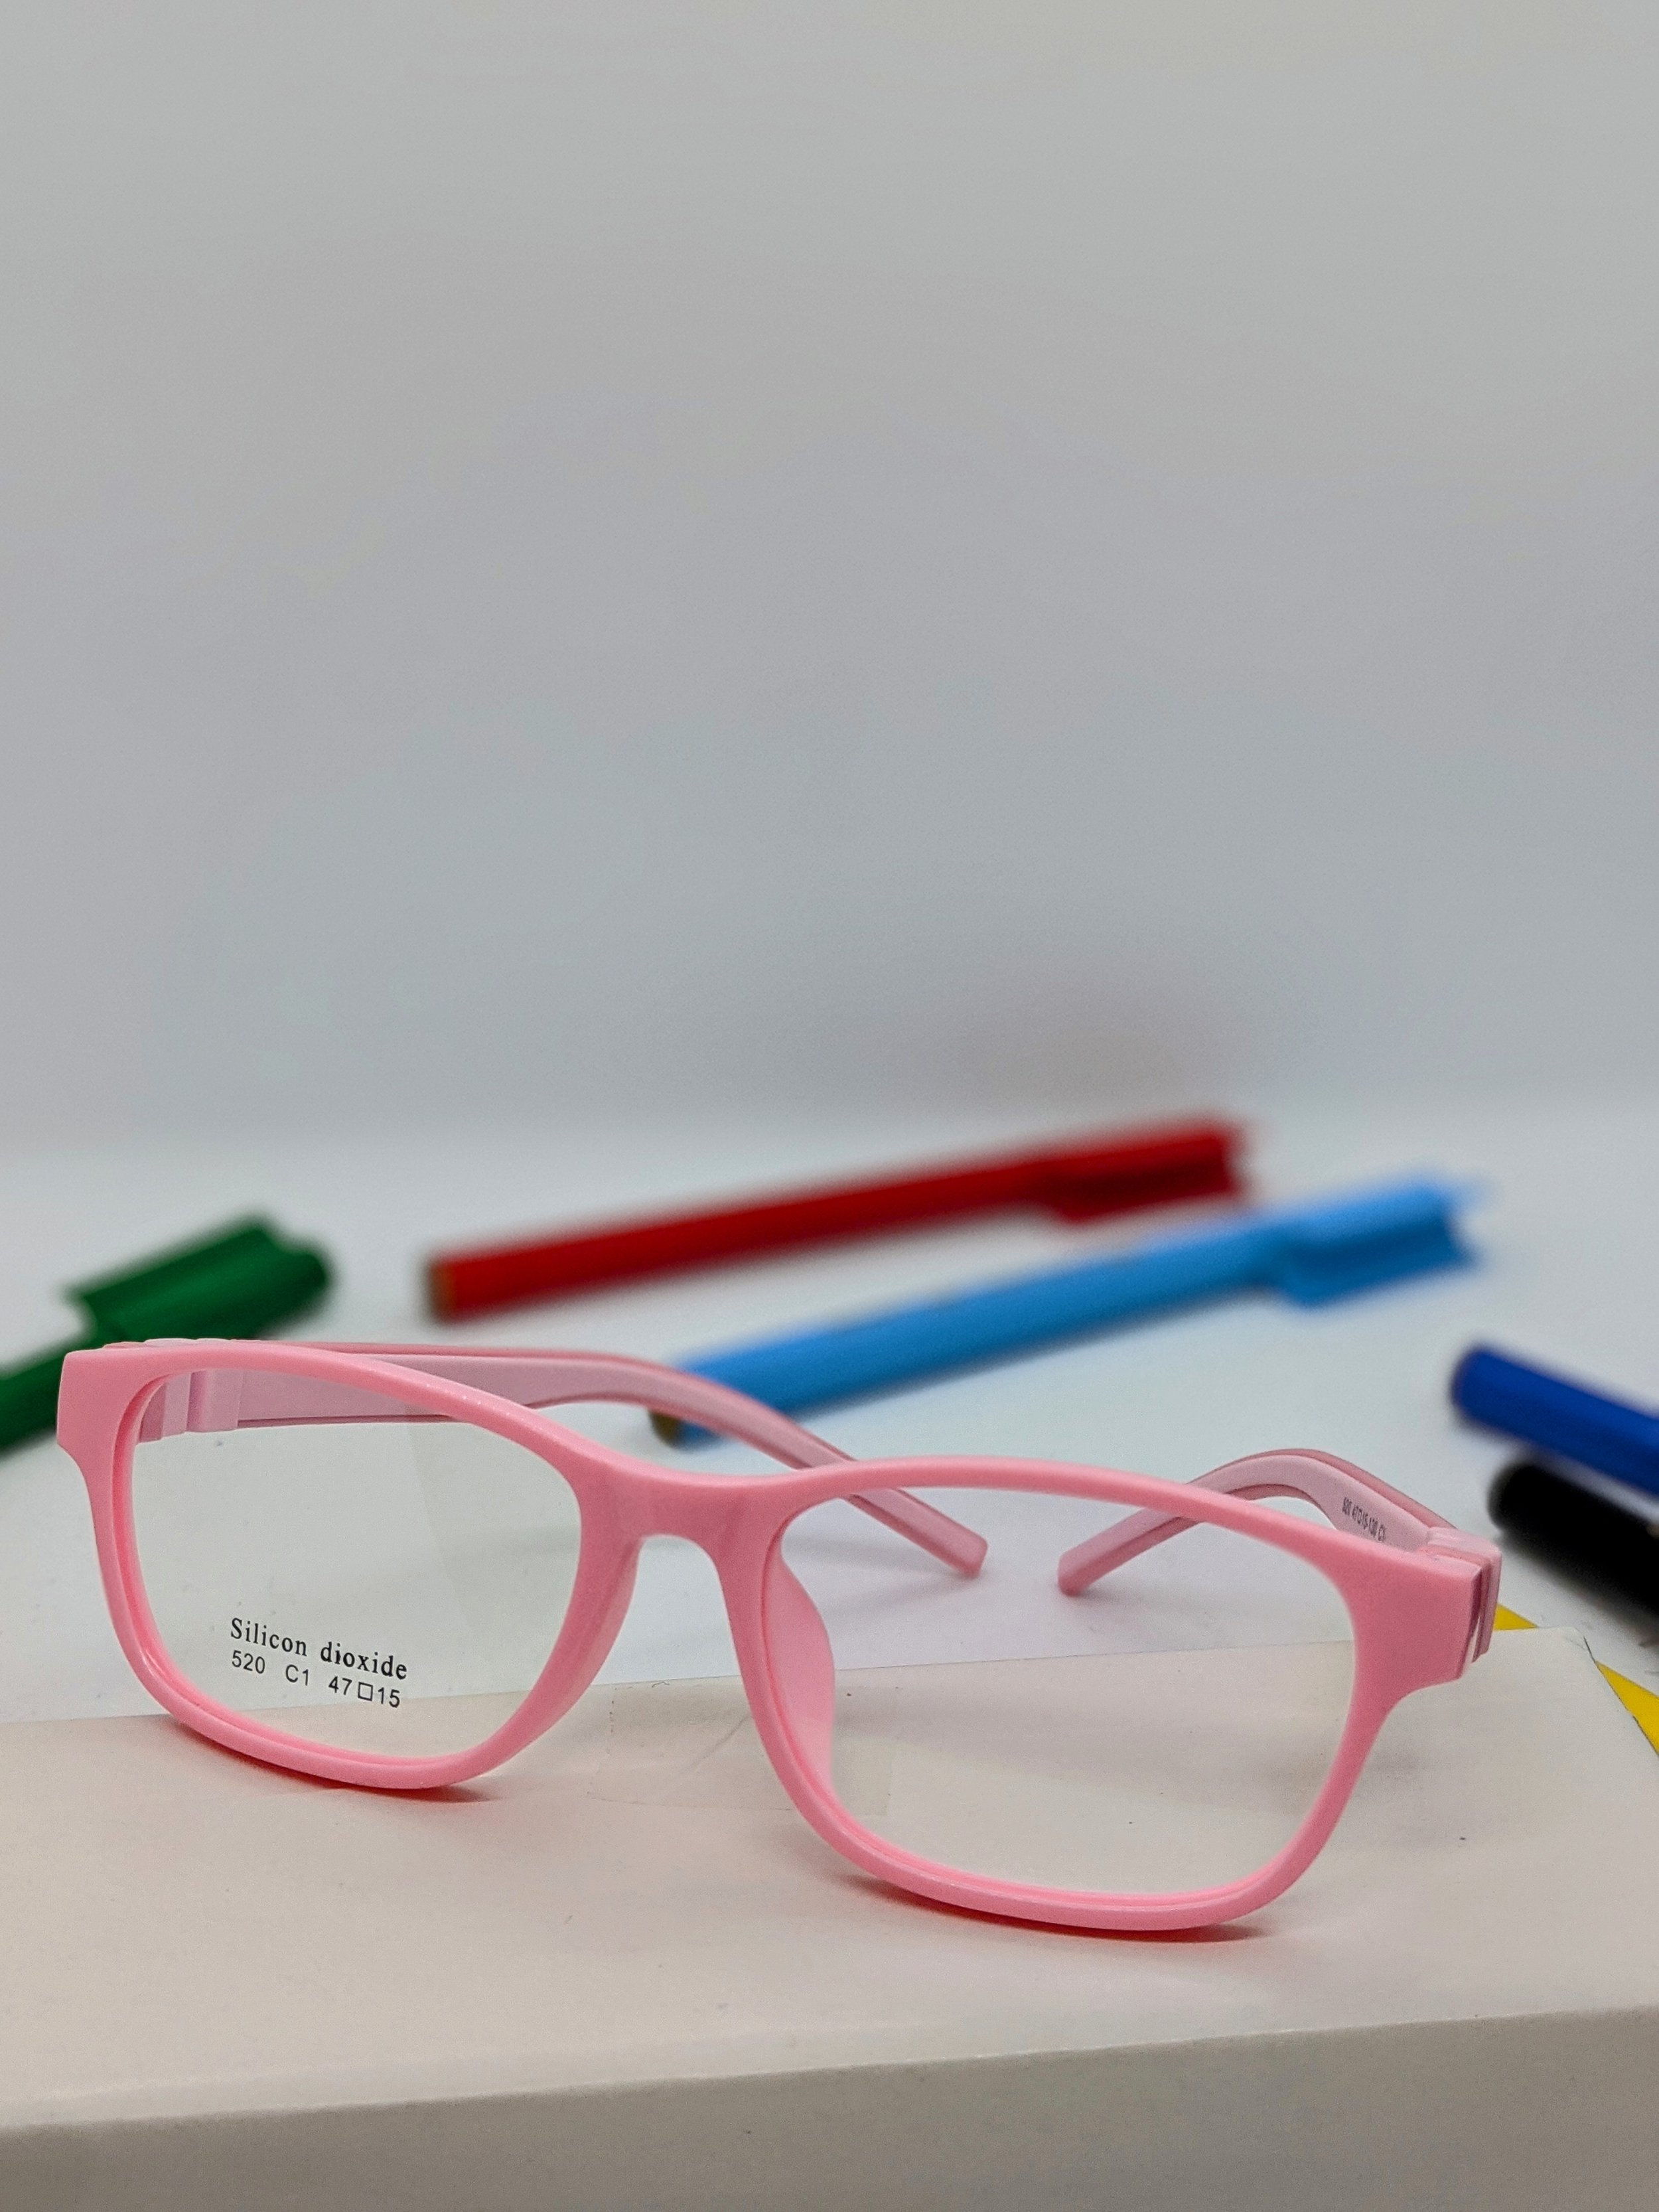 Nova Optical Newcastle Opticians Kids Glasses School Frames Childrens Girls Lenses.jpg